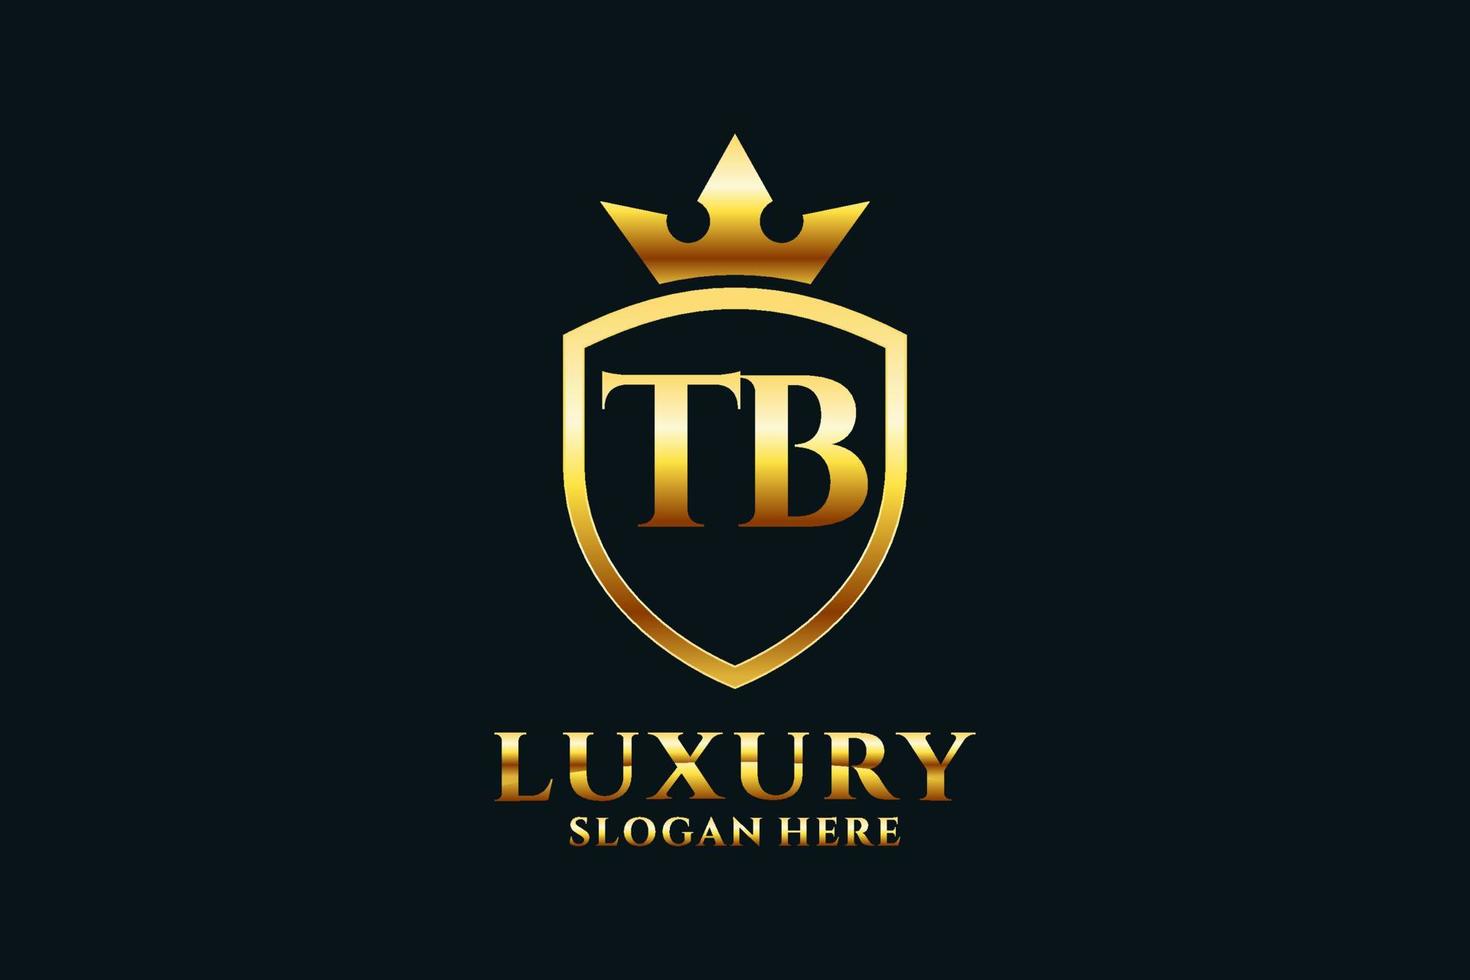 logo monogramme de luxe élégant initial tb ou modèle de badge avec volutes et couronne royale - parfait pour les projets de marque de luxe vecteur